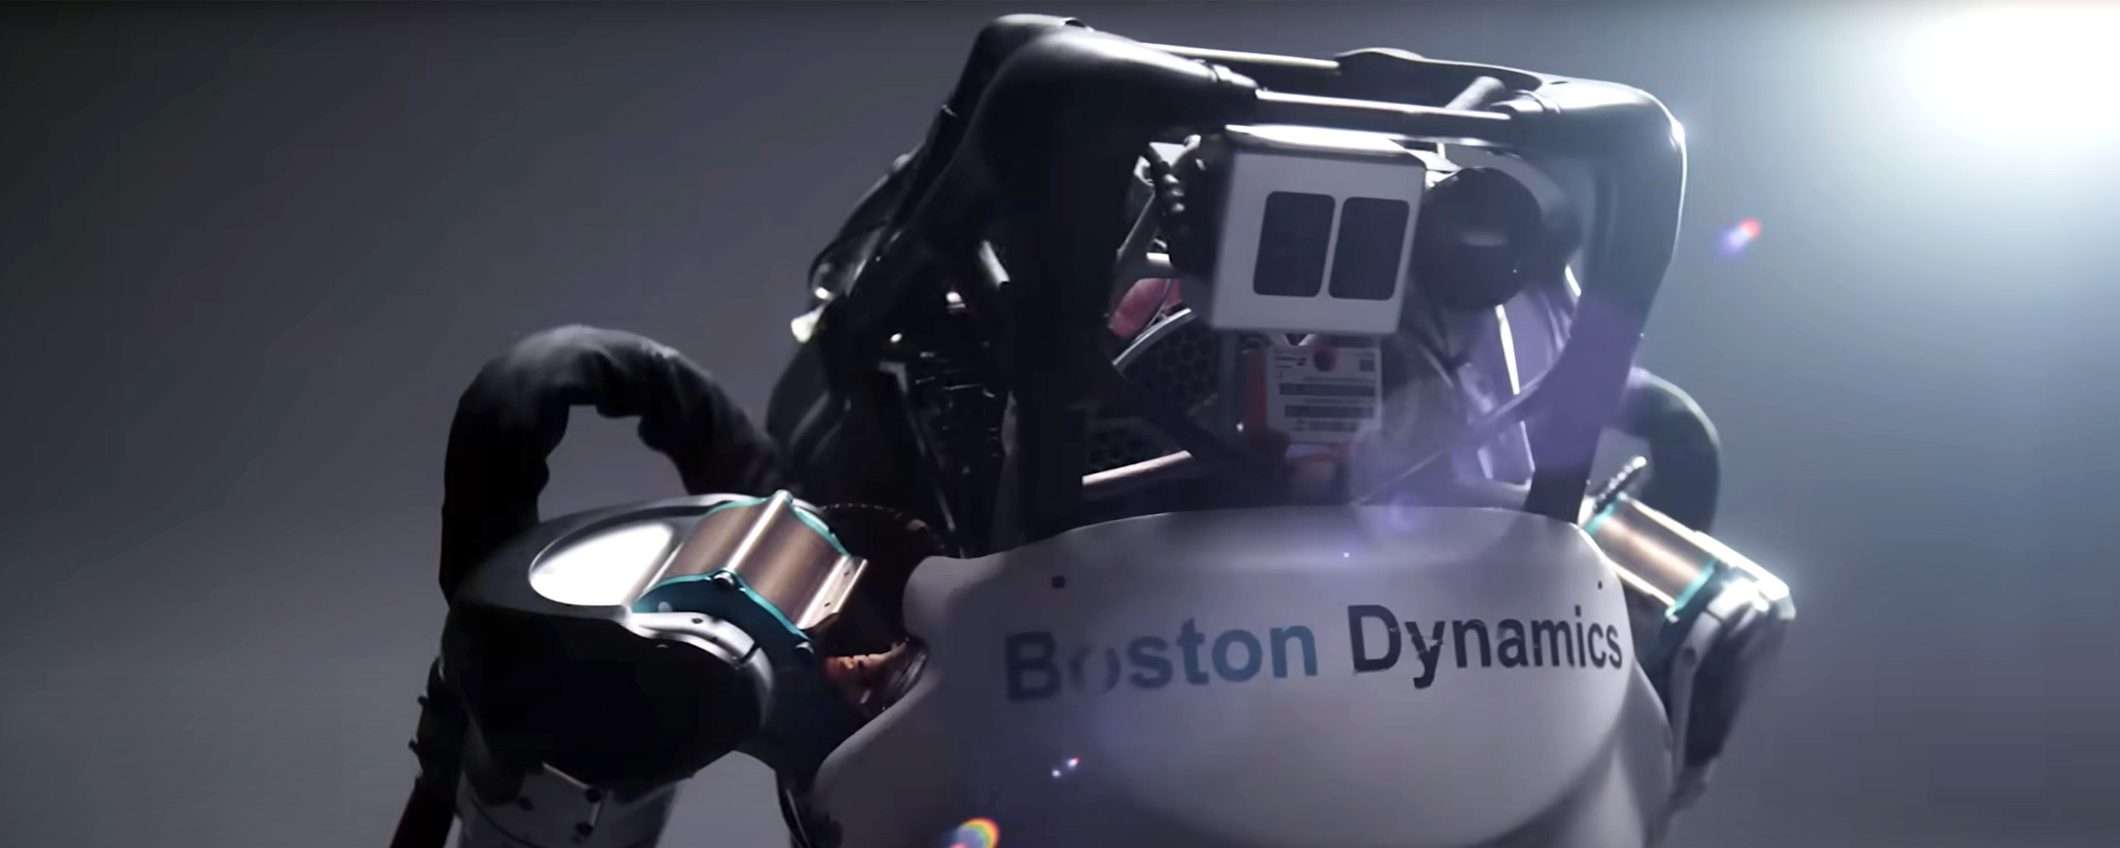 Boston Dynamics ferma i robot del progetto Atlas